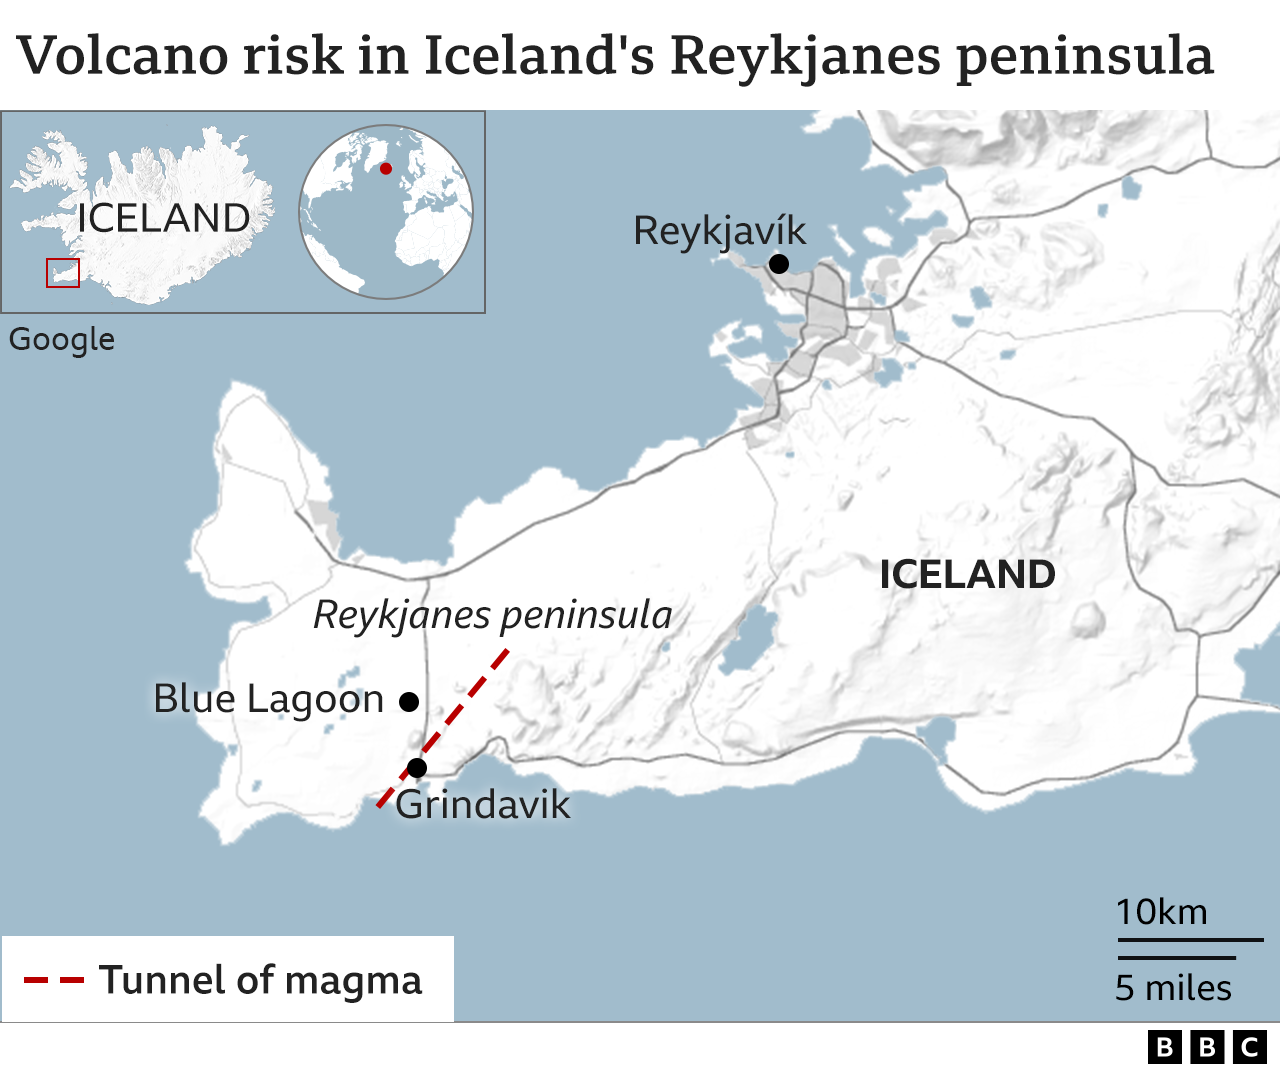 Map of Reykjanes peninsula